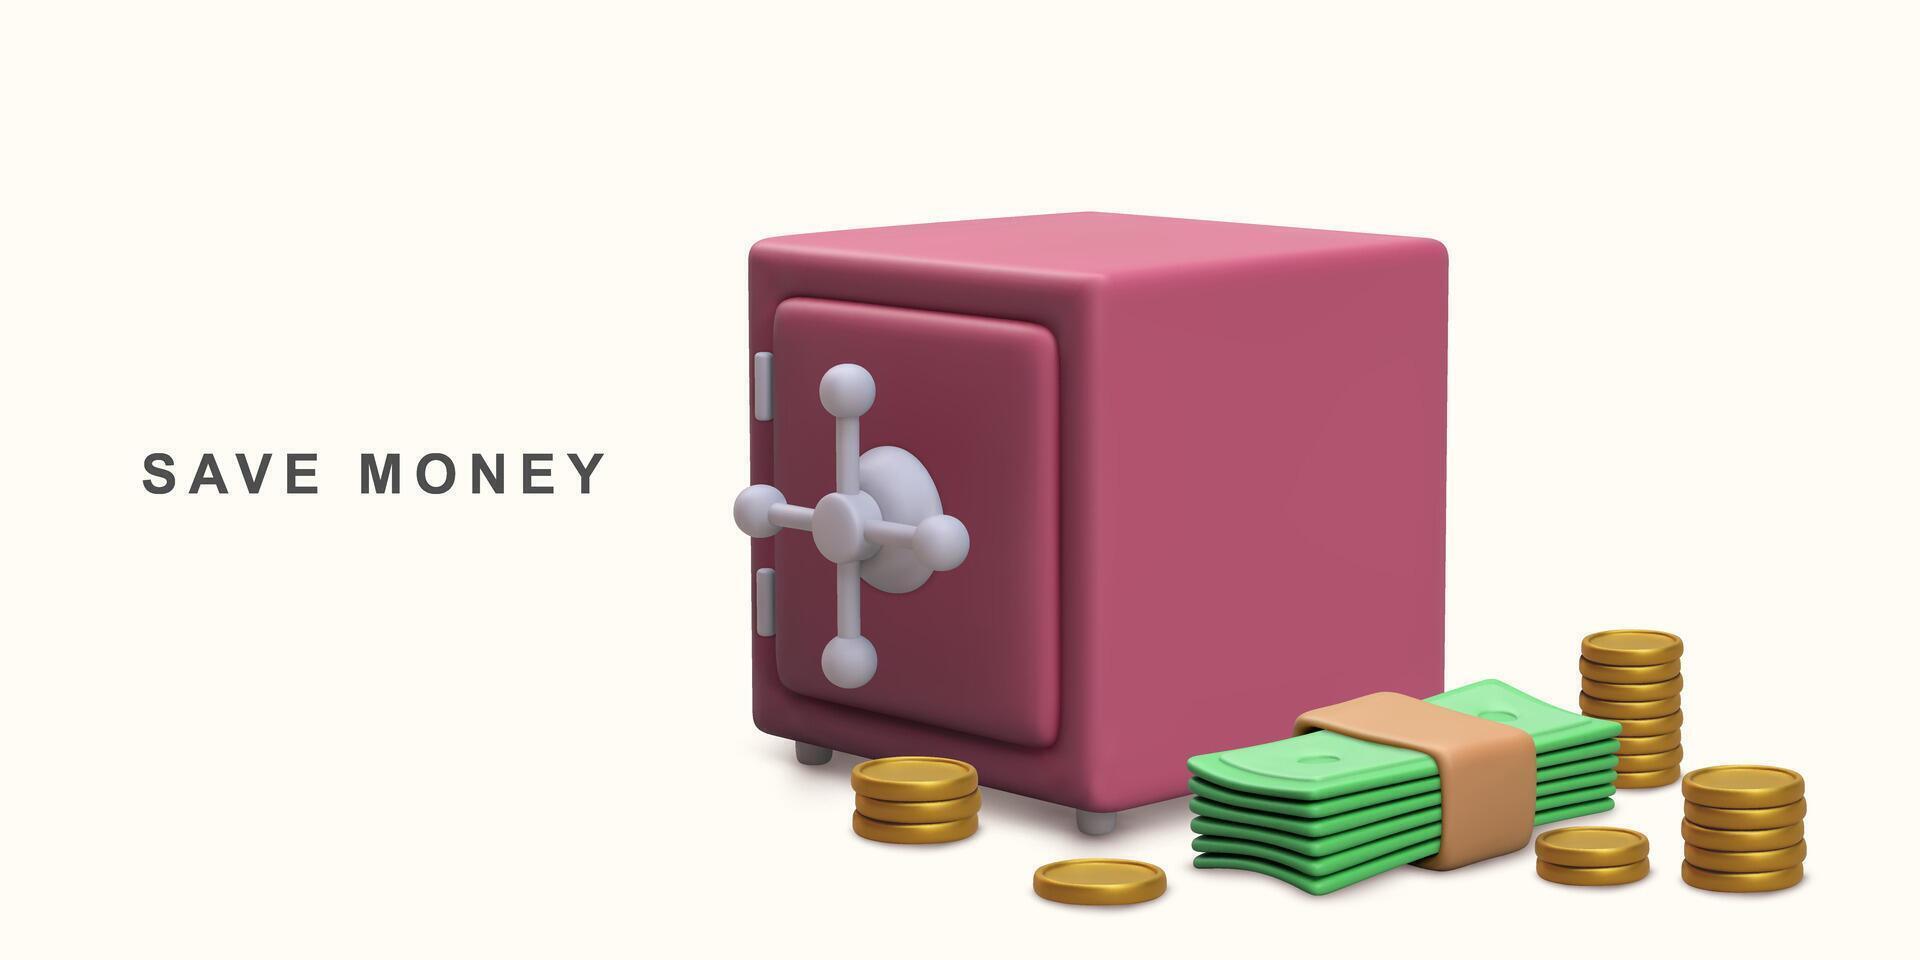 3d realista concepto seguro caja monedas y pilas de dólar dinero en efectivo. vector ilustración.